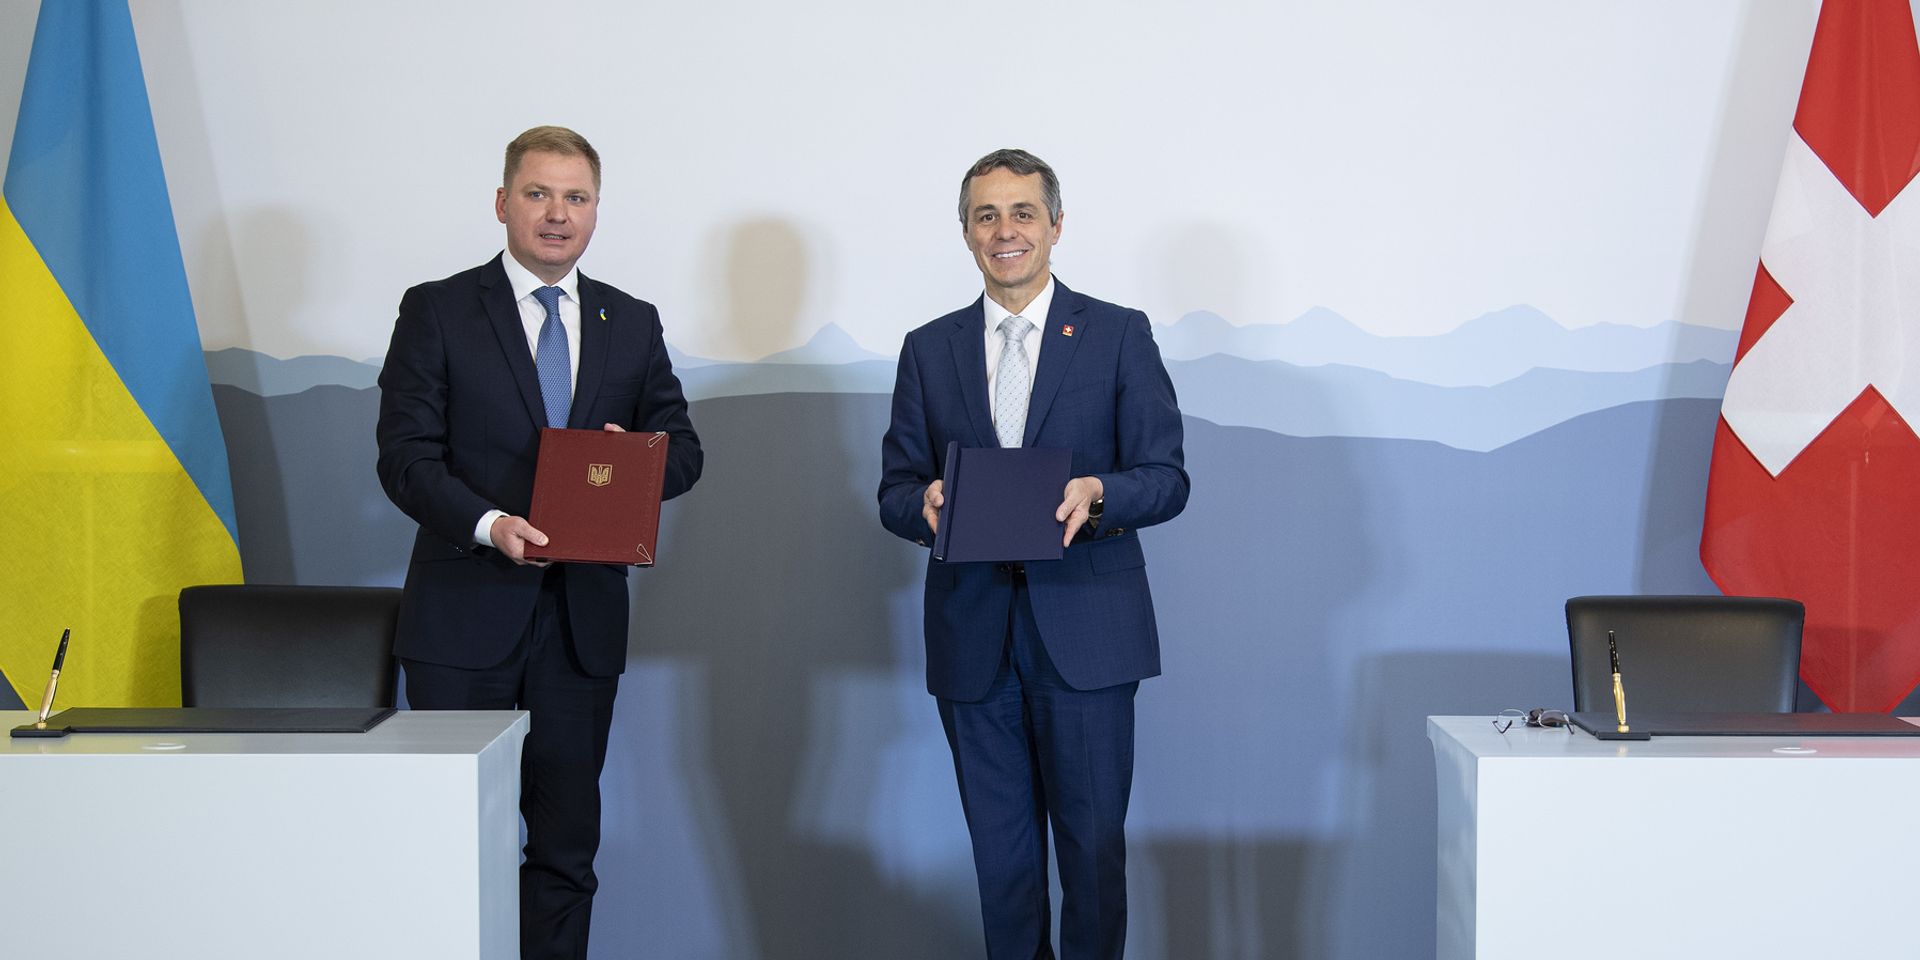 L'ambasciatore ucraino in Svizzera, Artem Rybchenko, e il consigliere federale Ignazio Cassis alla firma del Memorandum d'intesa il 30 giugno 2020 a Berna.